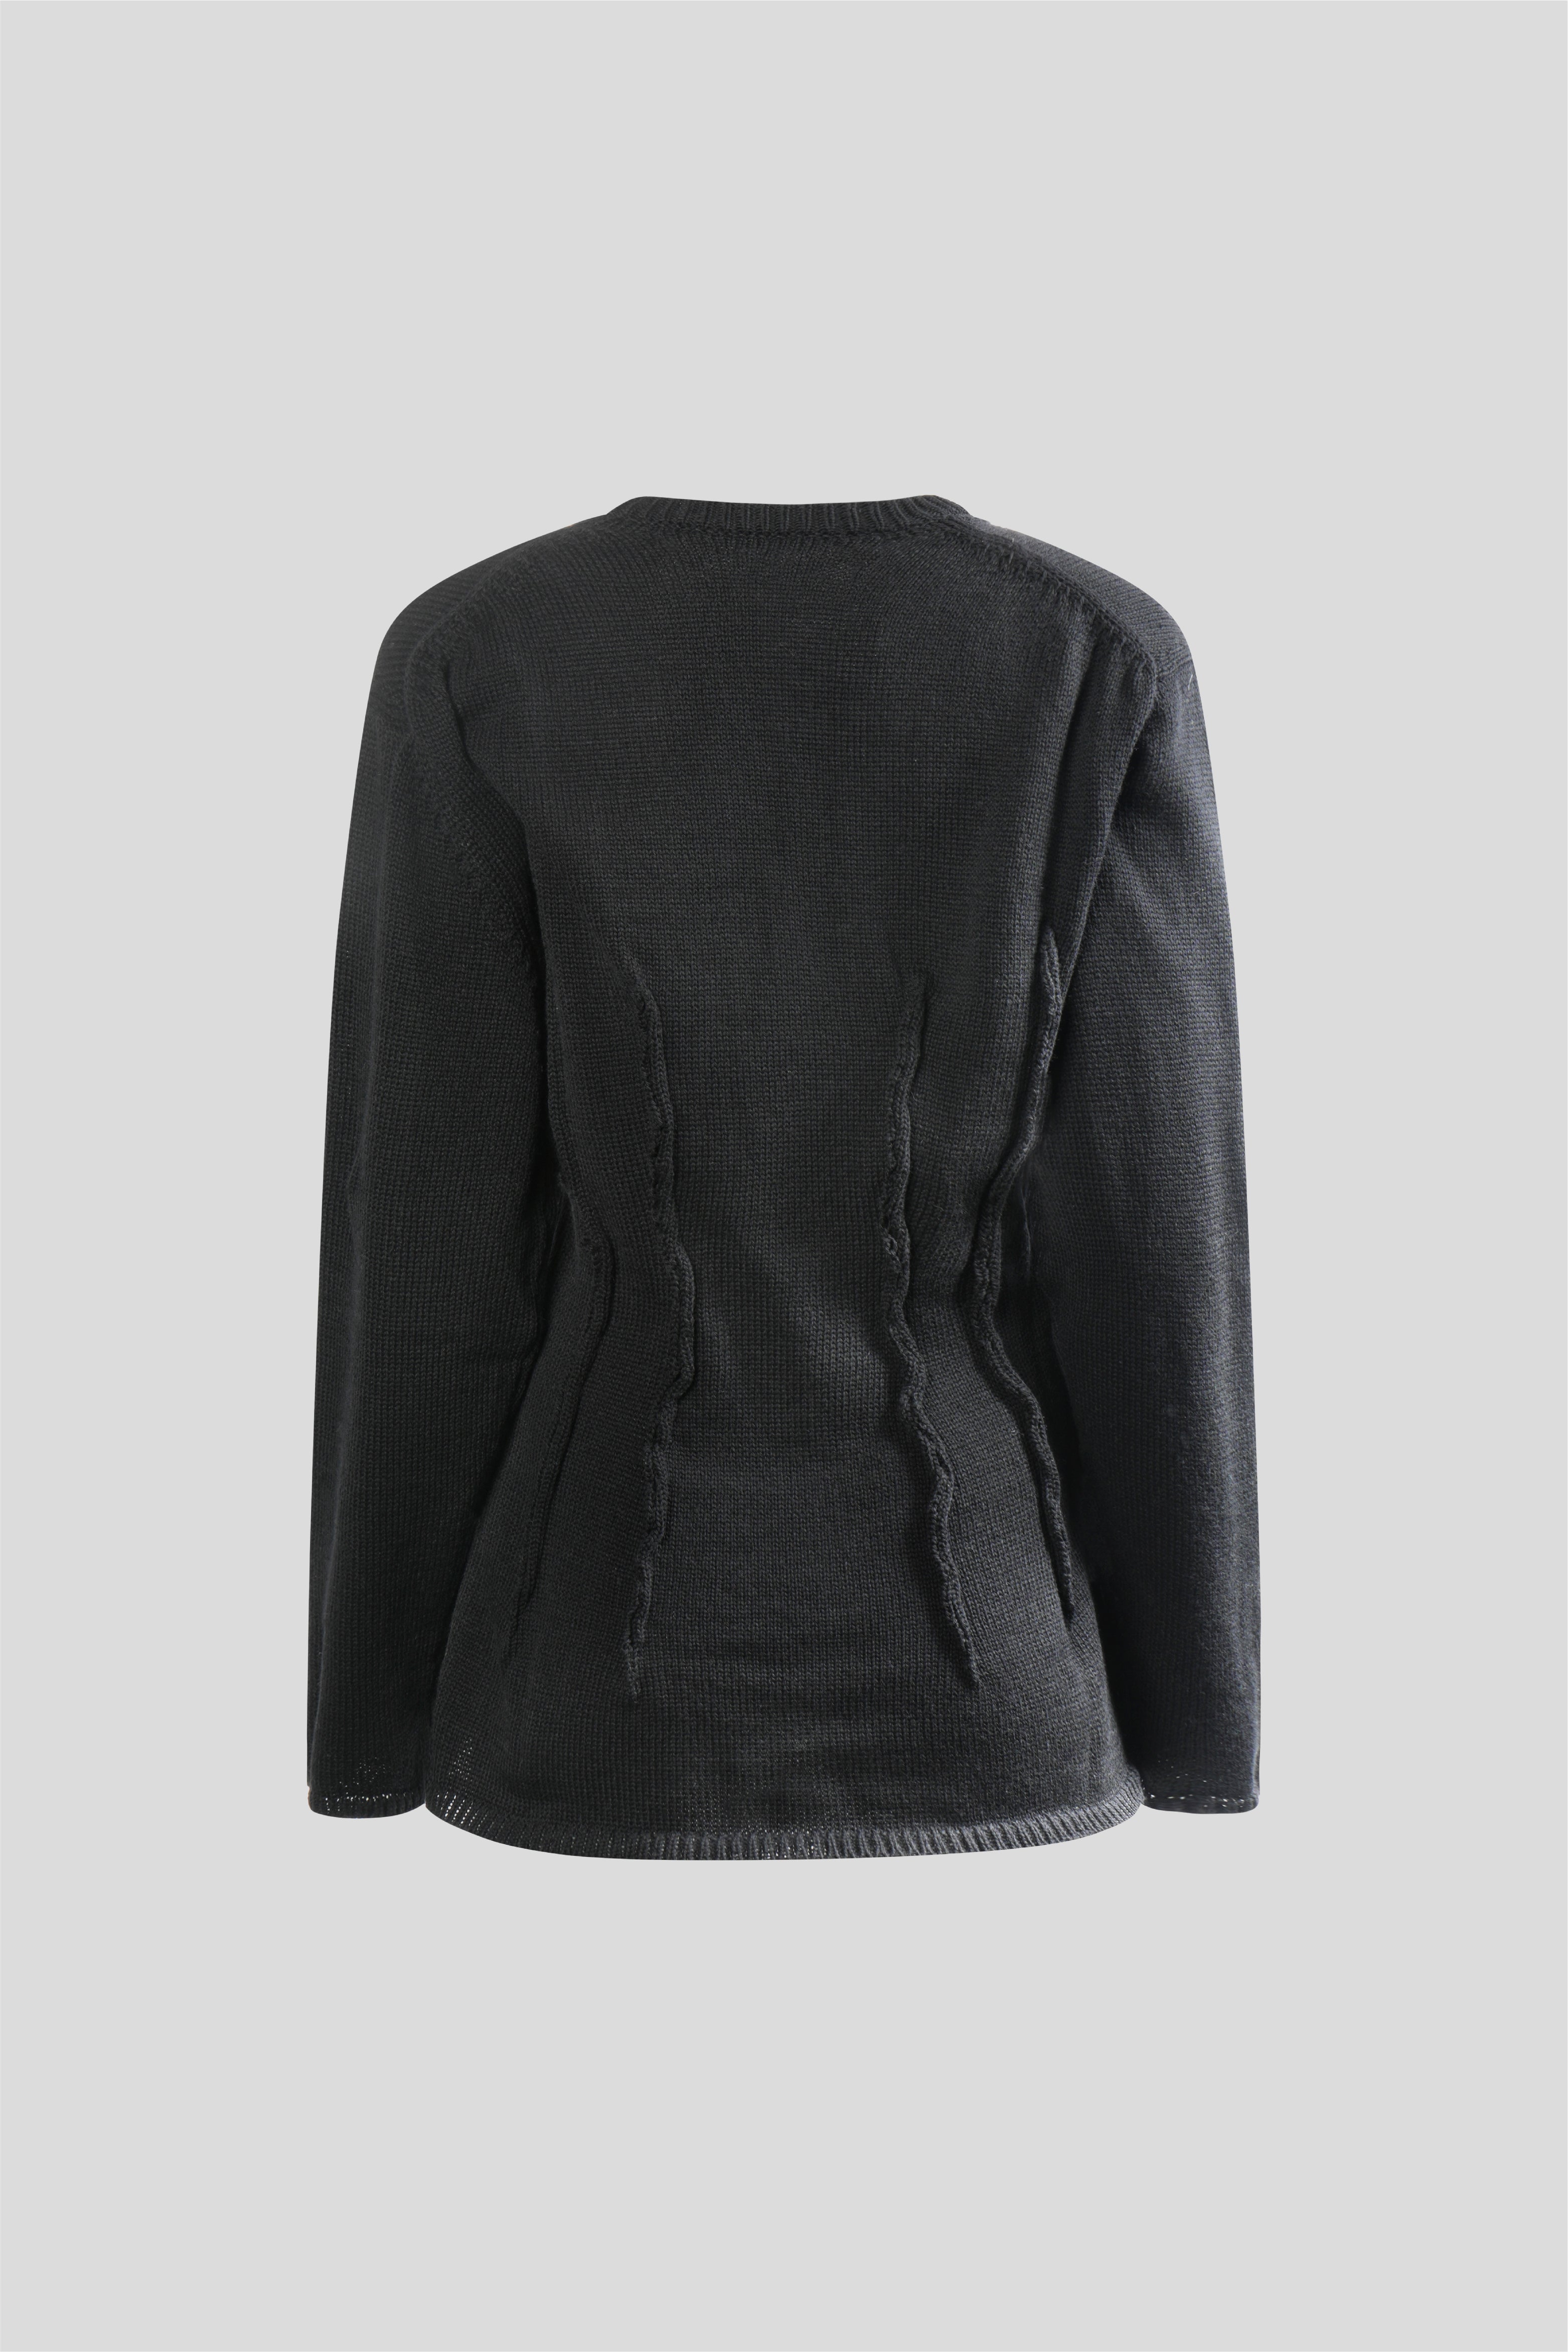 Selectshop FRAME - COMME DES GARÇONS Sweater Outerwear Concept Store Dubai